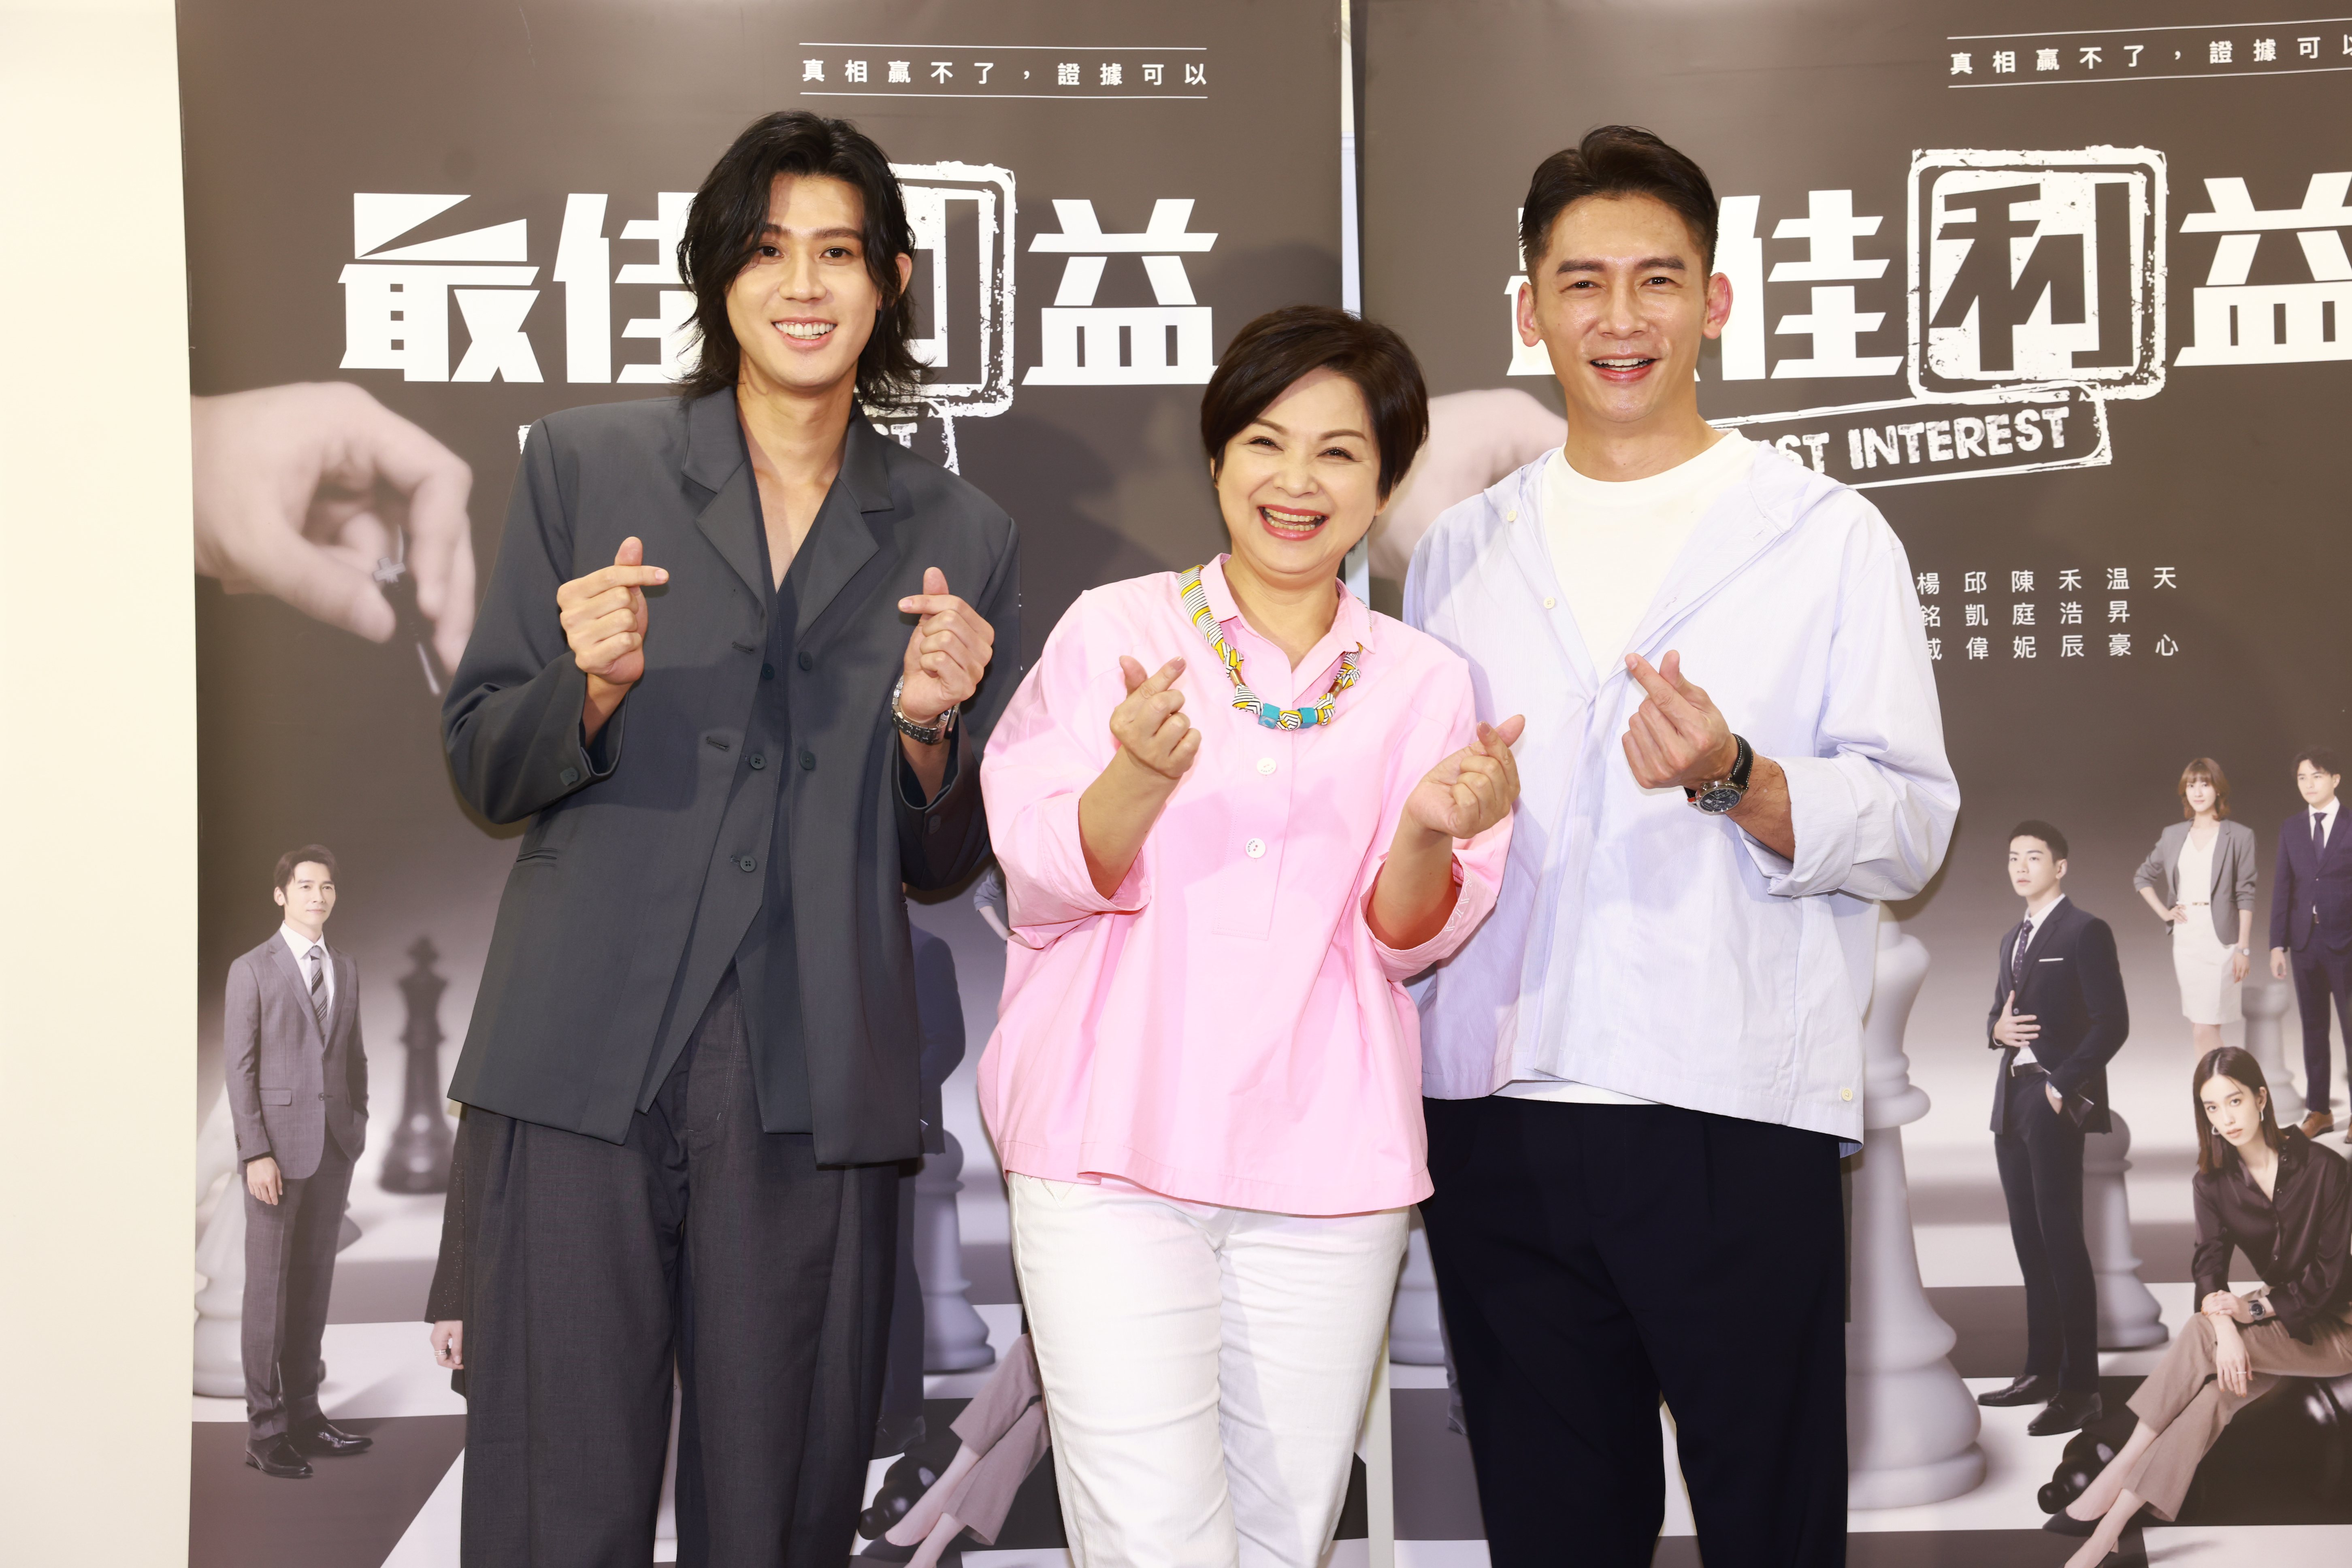 李玉玺（左起）、杨贵媚、温昇豪为戏剧“最佳利益2”宣传。记者王聪贤/摄影